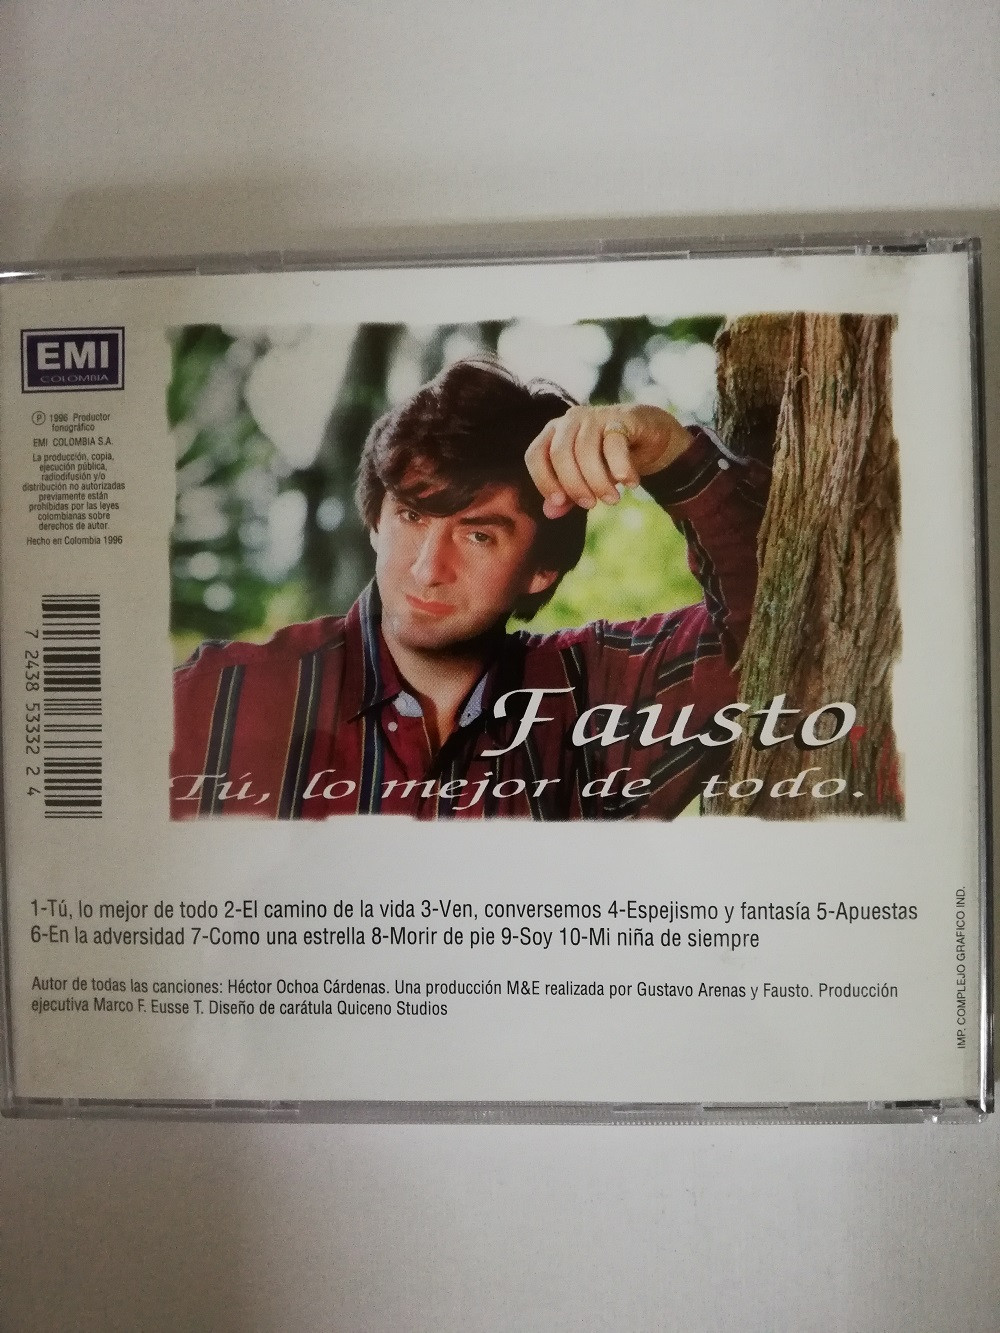 Imagen CD FAUSTO - TU, LO MEJOR DE TODO 2